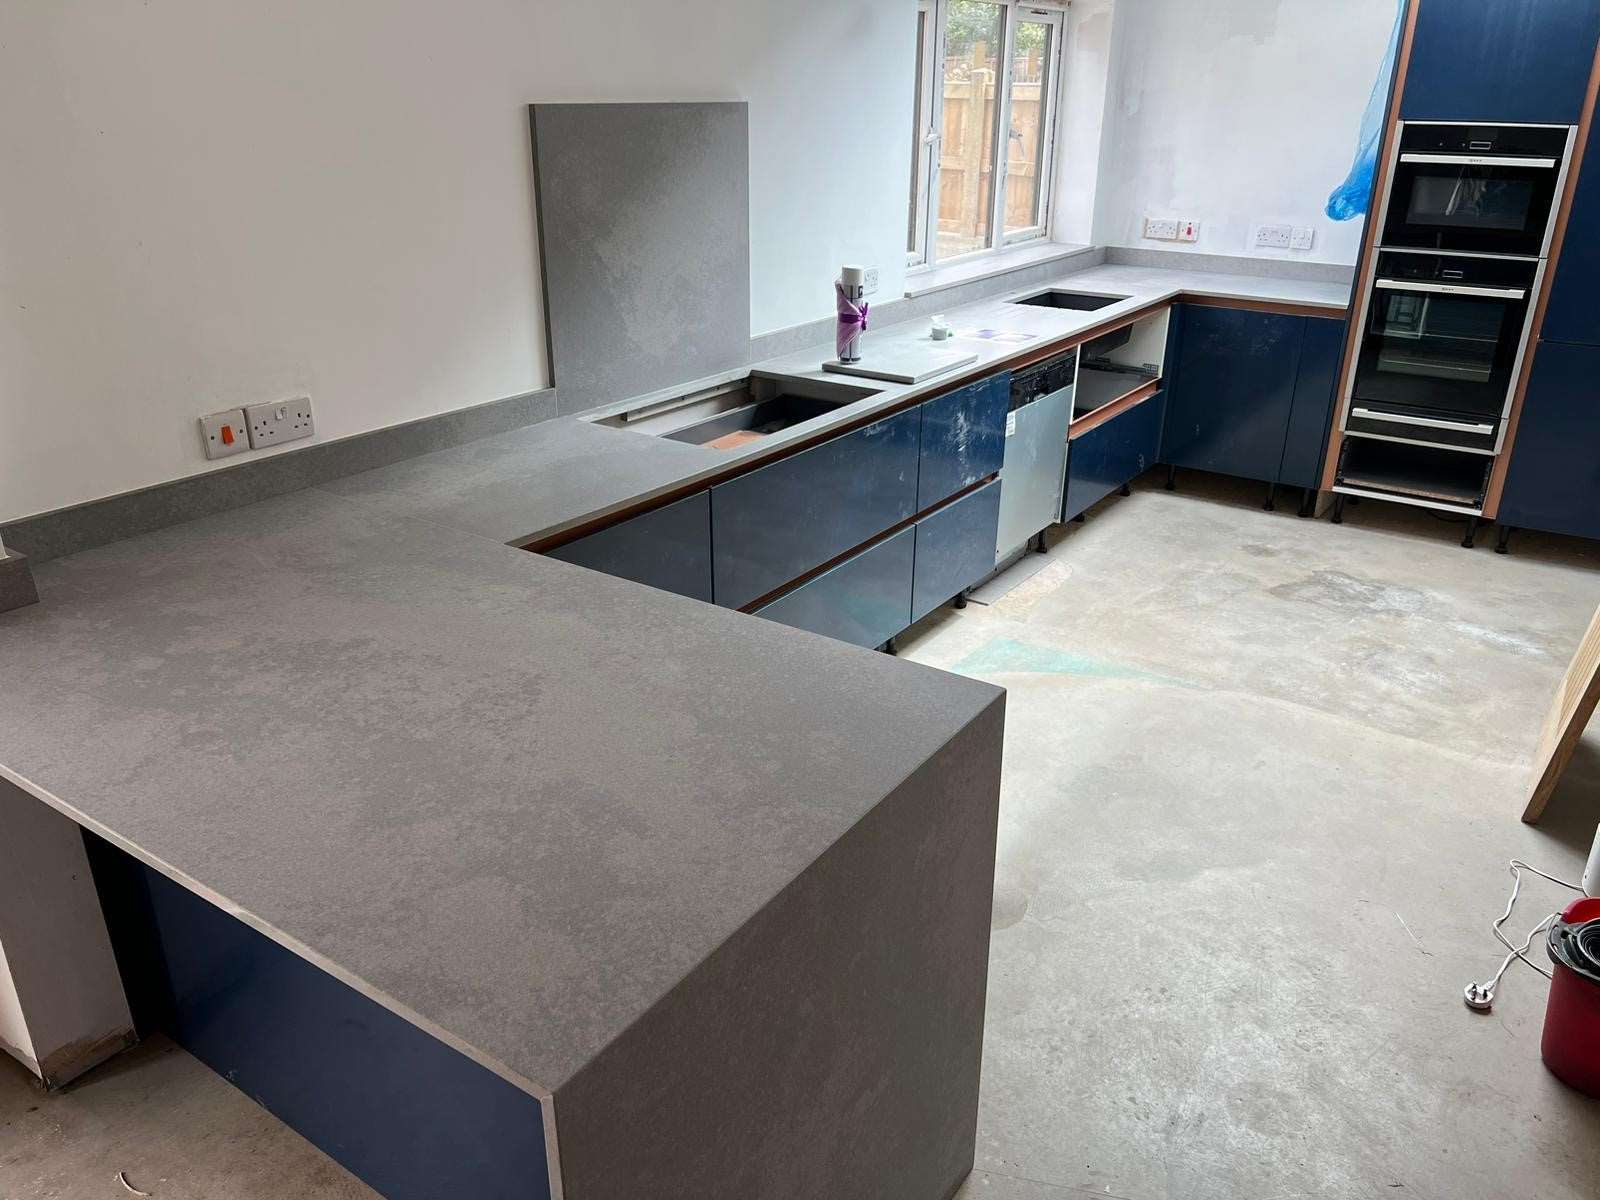 London Grey Quartz kitchen worktops